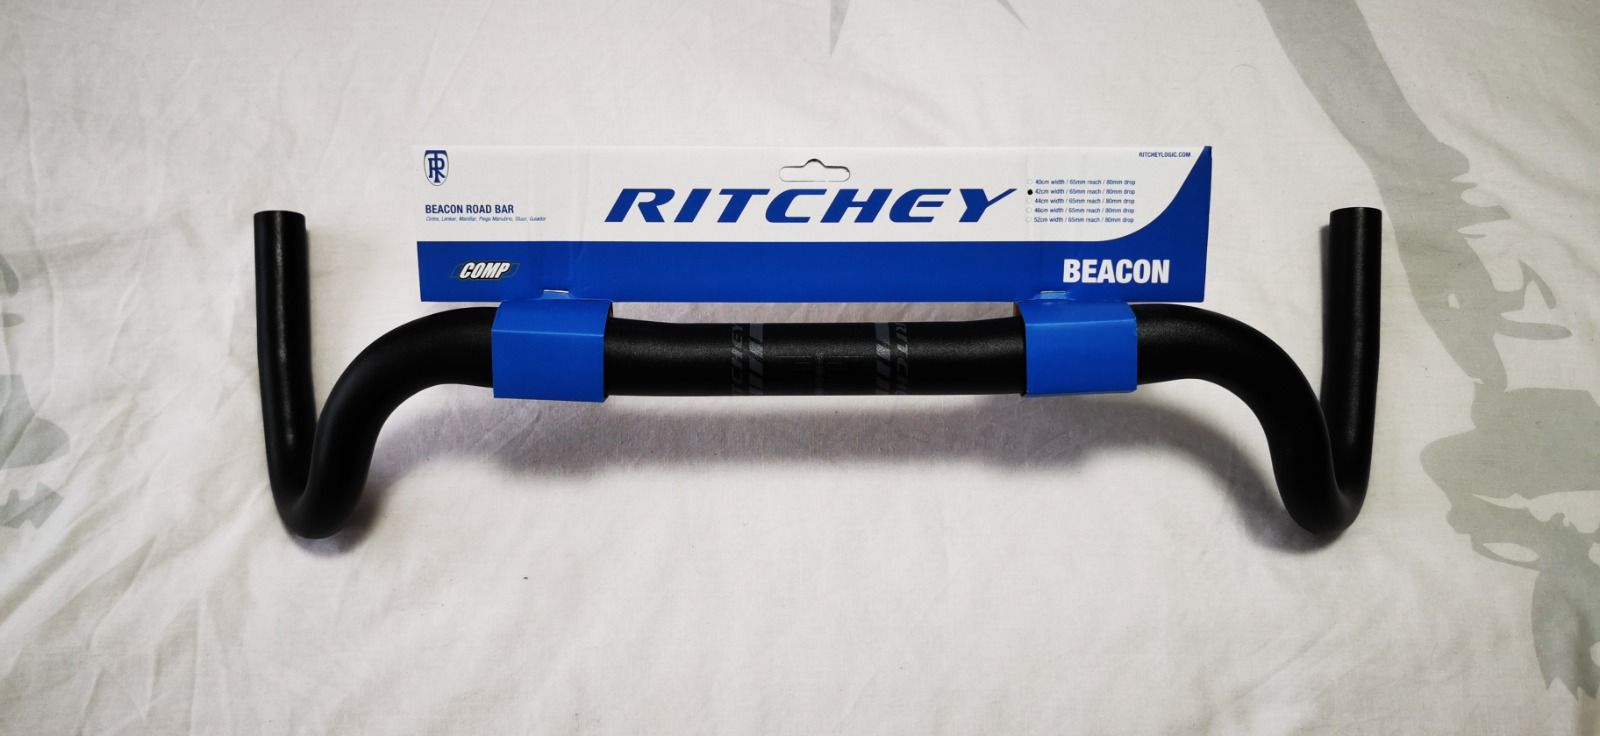 Ritchey Comp Beacon gravel